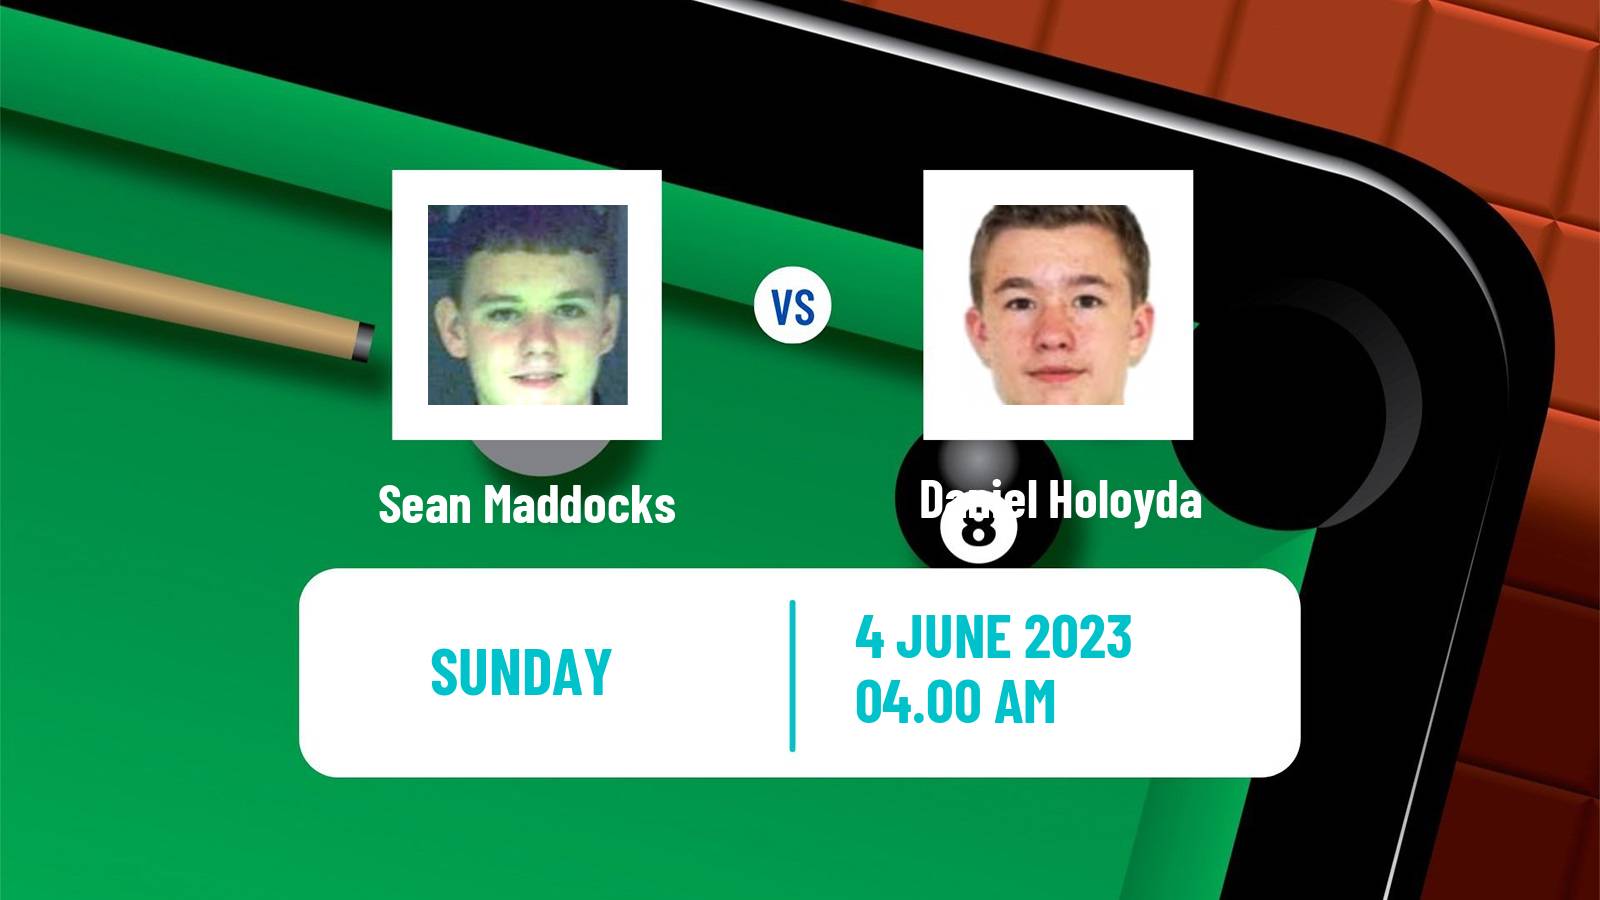 Snooker Qualifying School 2 Sean Maddocks - Daniel Holoyda